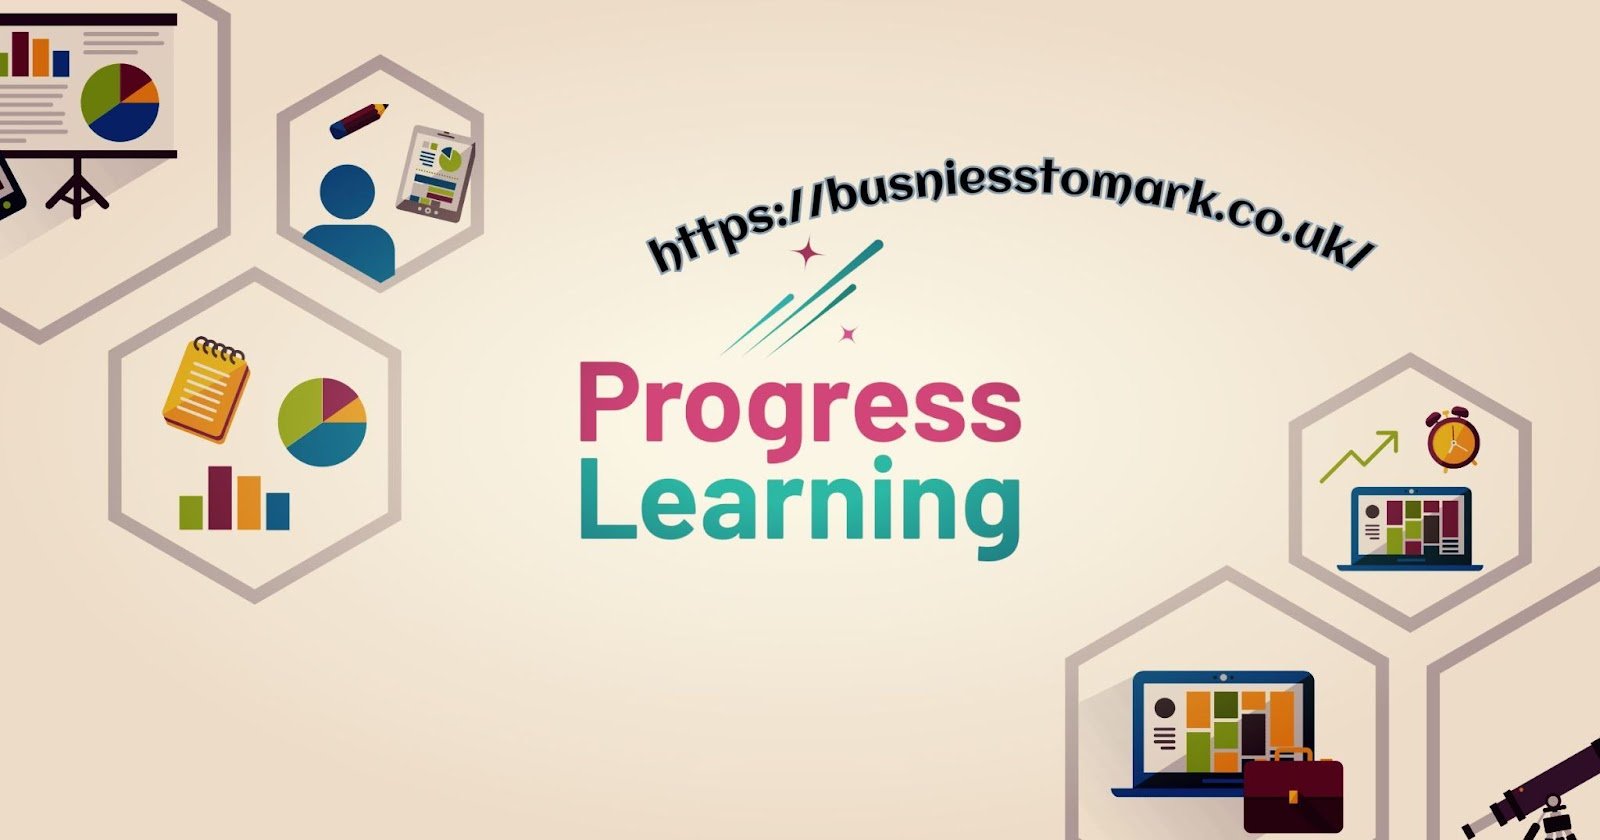 Progress Learning